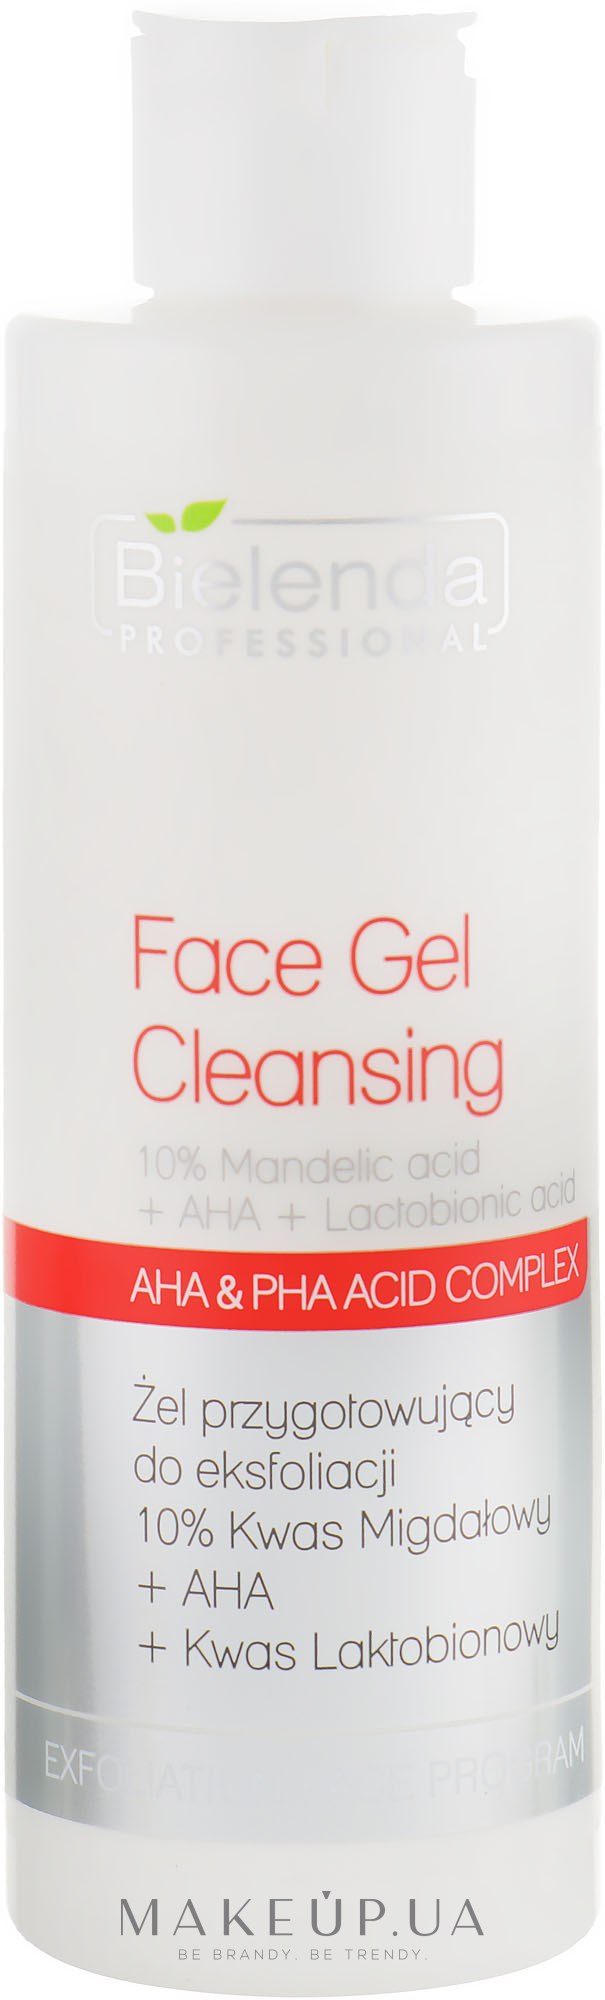 Гель для эксфолиации 10% Миндальная кислота + AHA + Лактобионовая кислота - Bielenda Professional Exfoliation Face Program Cleansing Face Gel — фото 200g